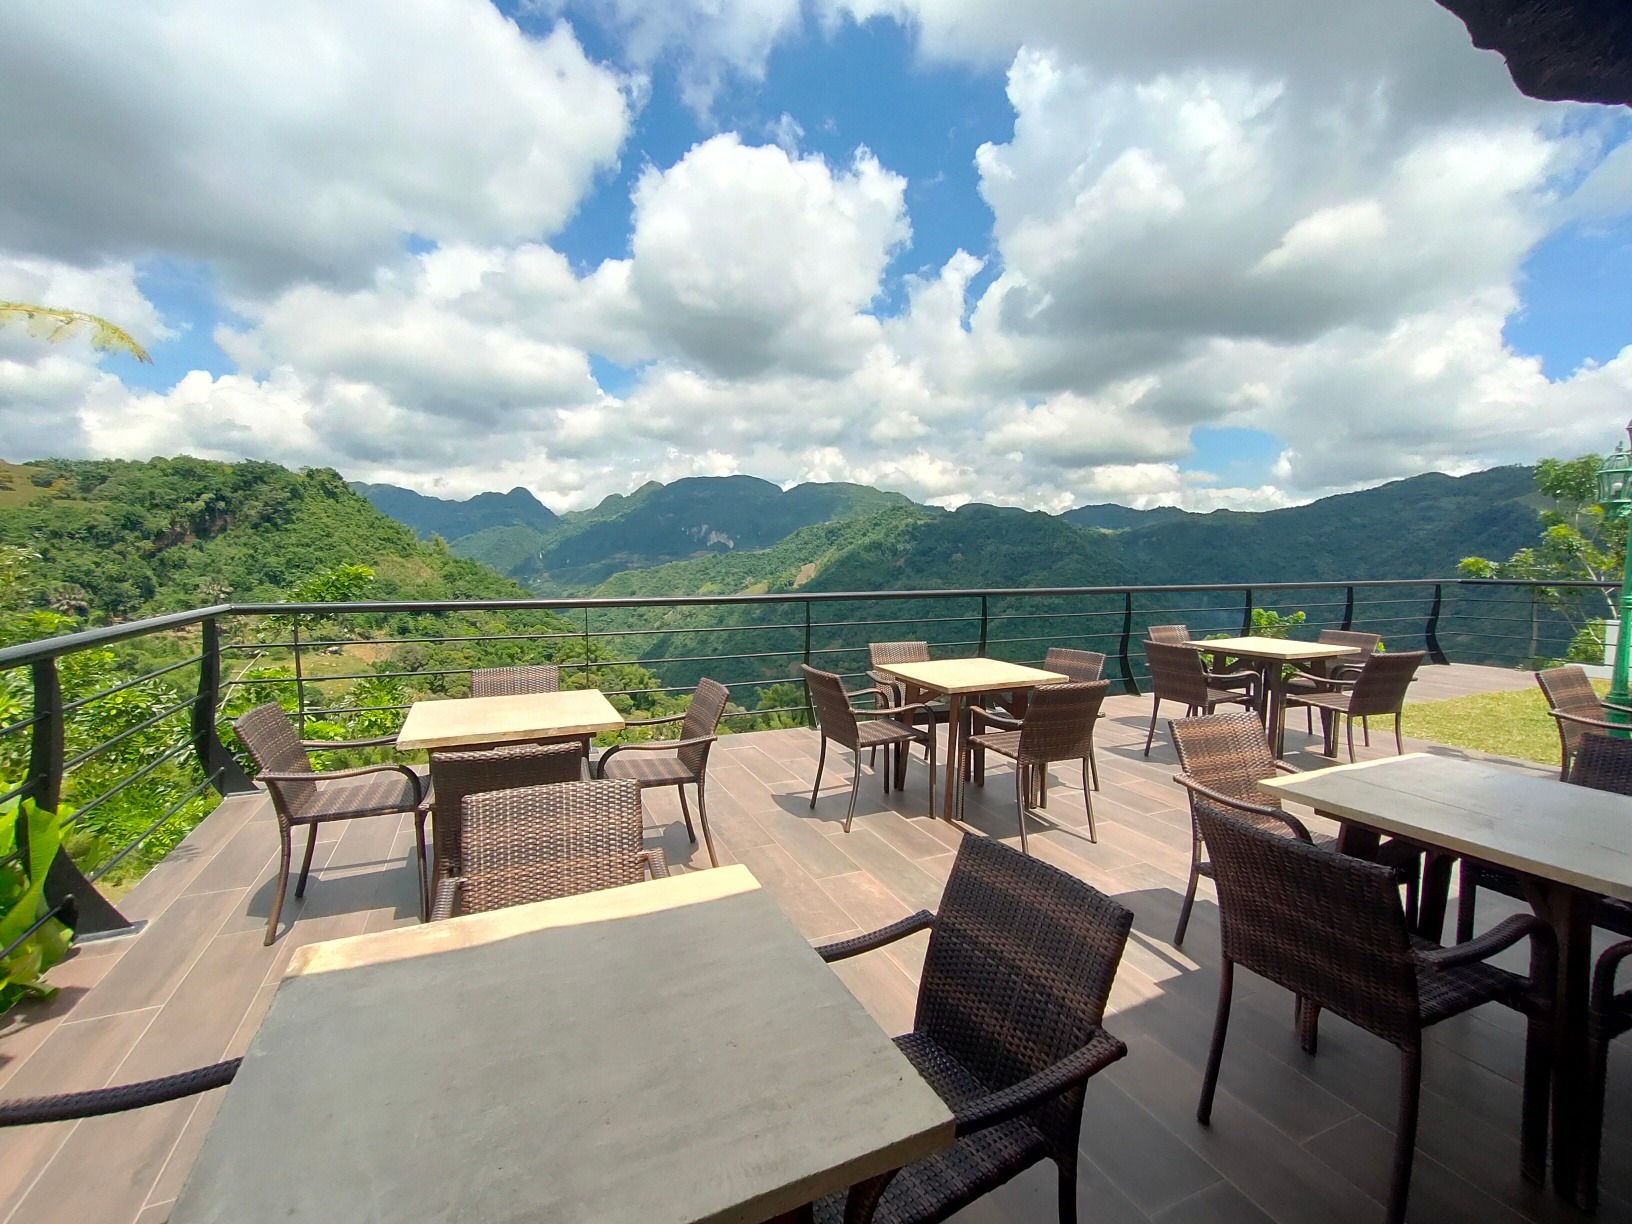 Chesanyama Café: Adventure and Farm-to-table dining in Brgy. Adlaon, Cebu